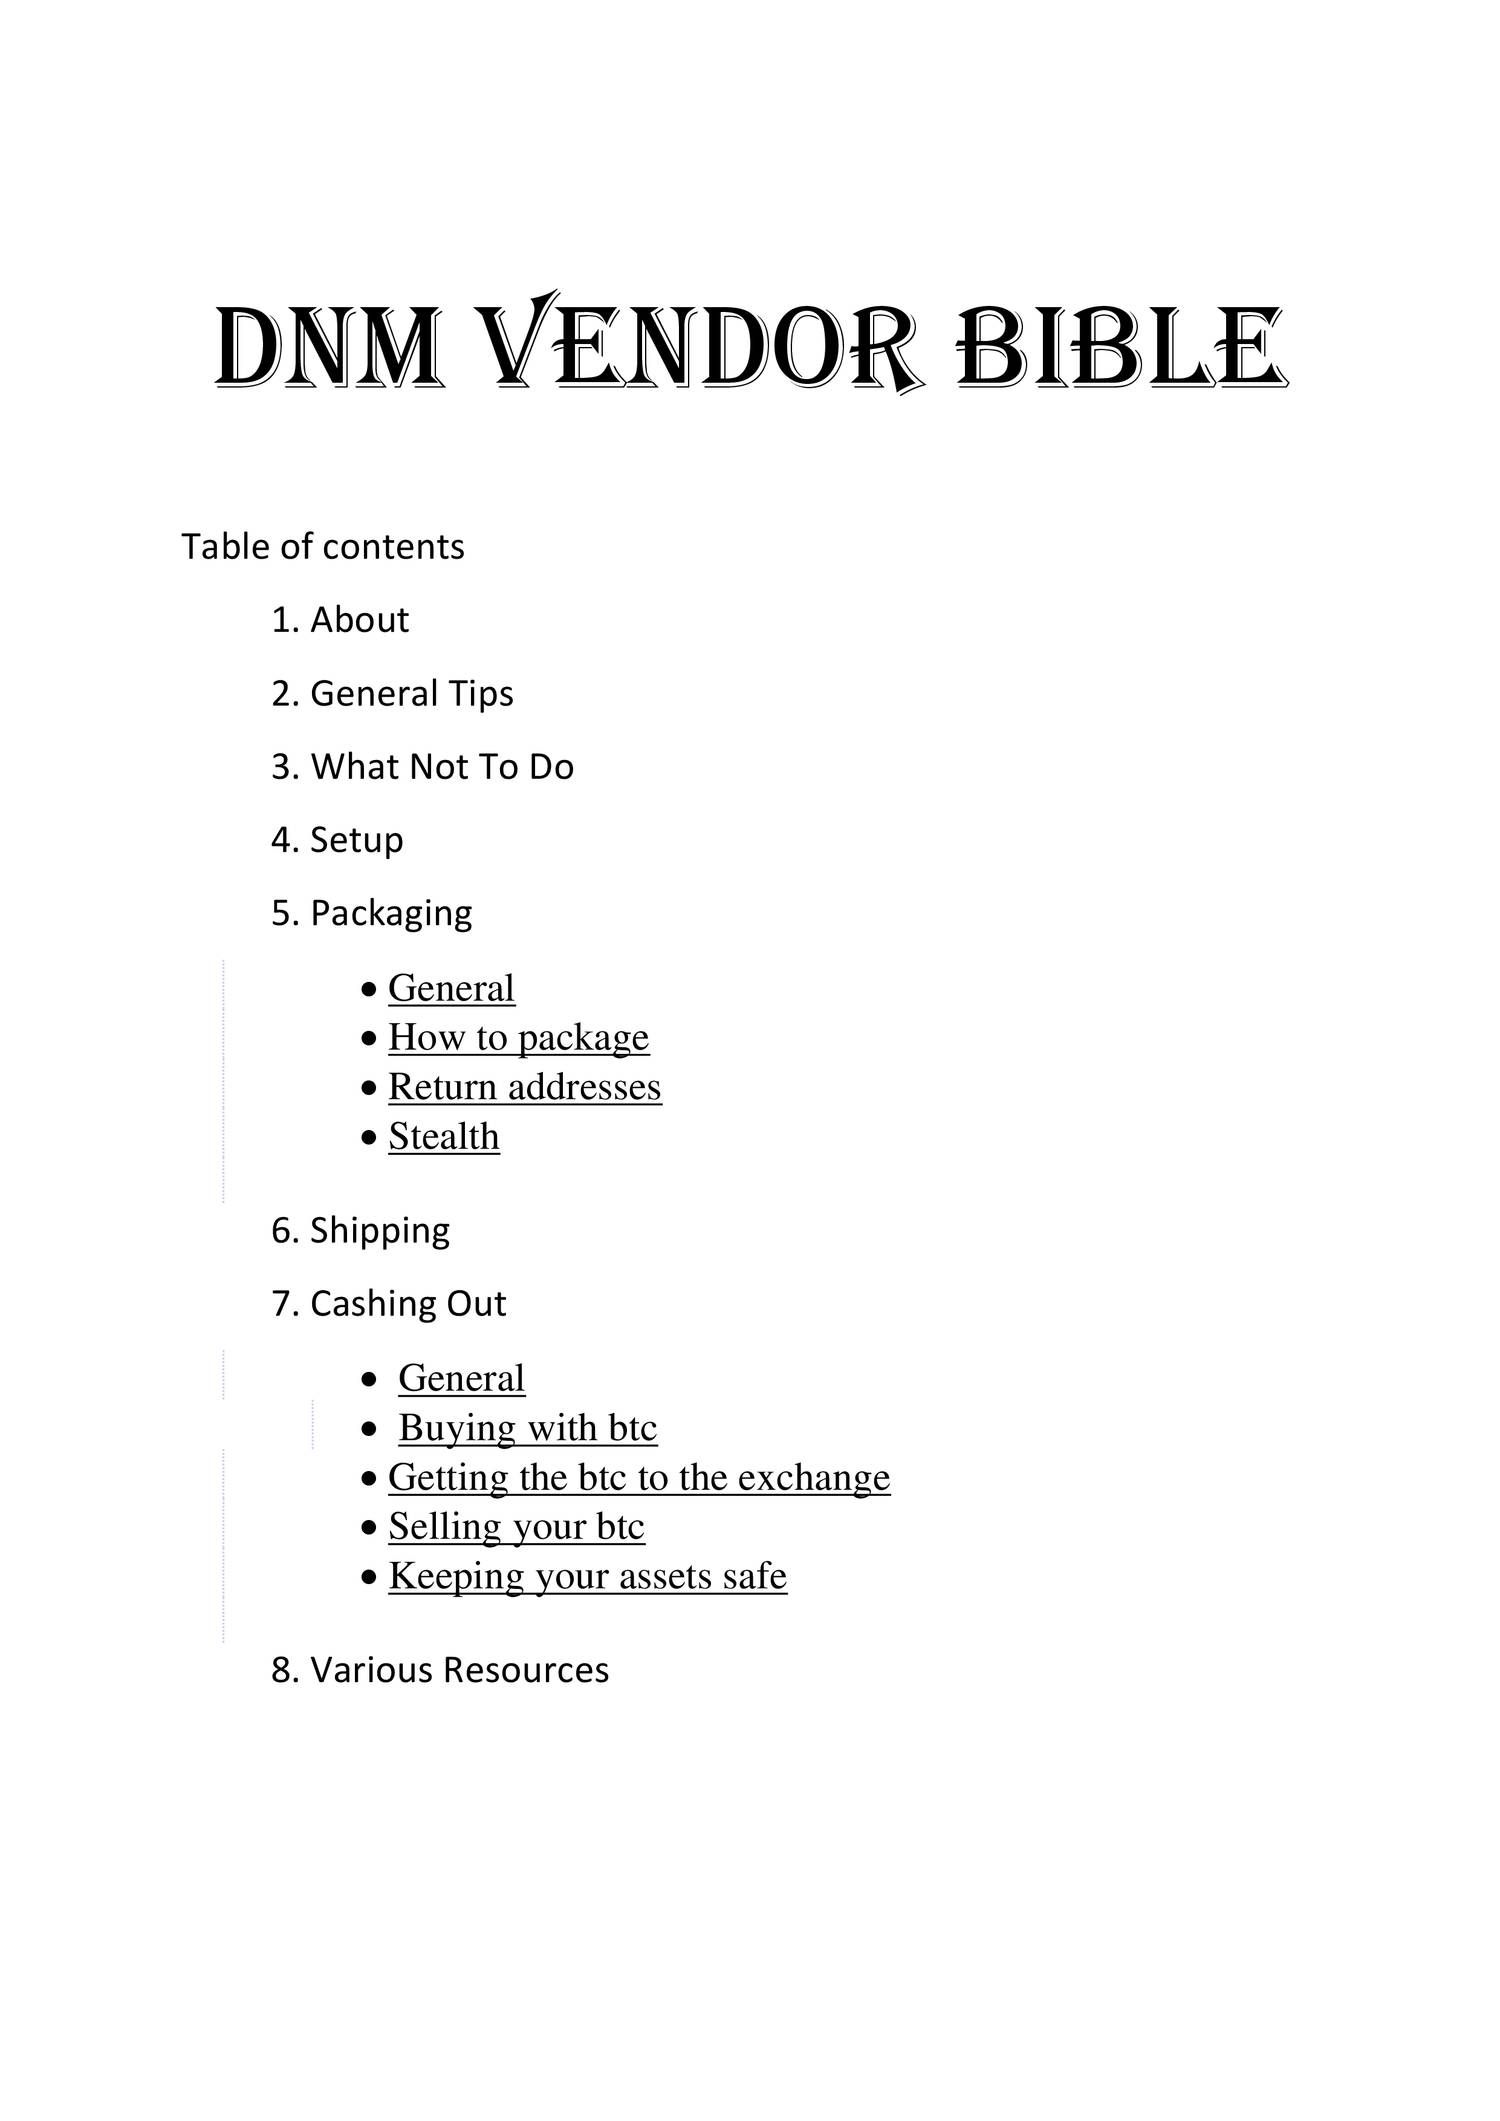 DNM Vendor Bible.pdf DocDroid